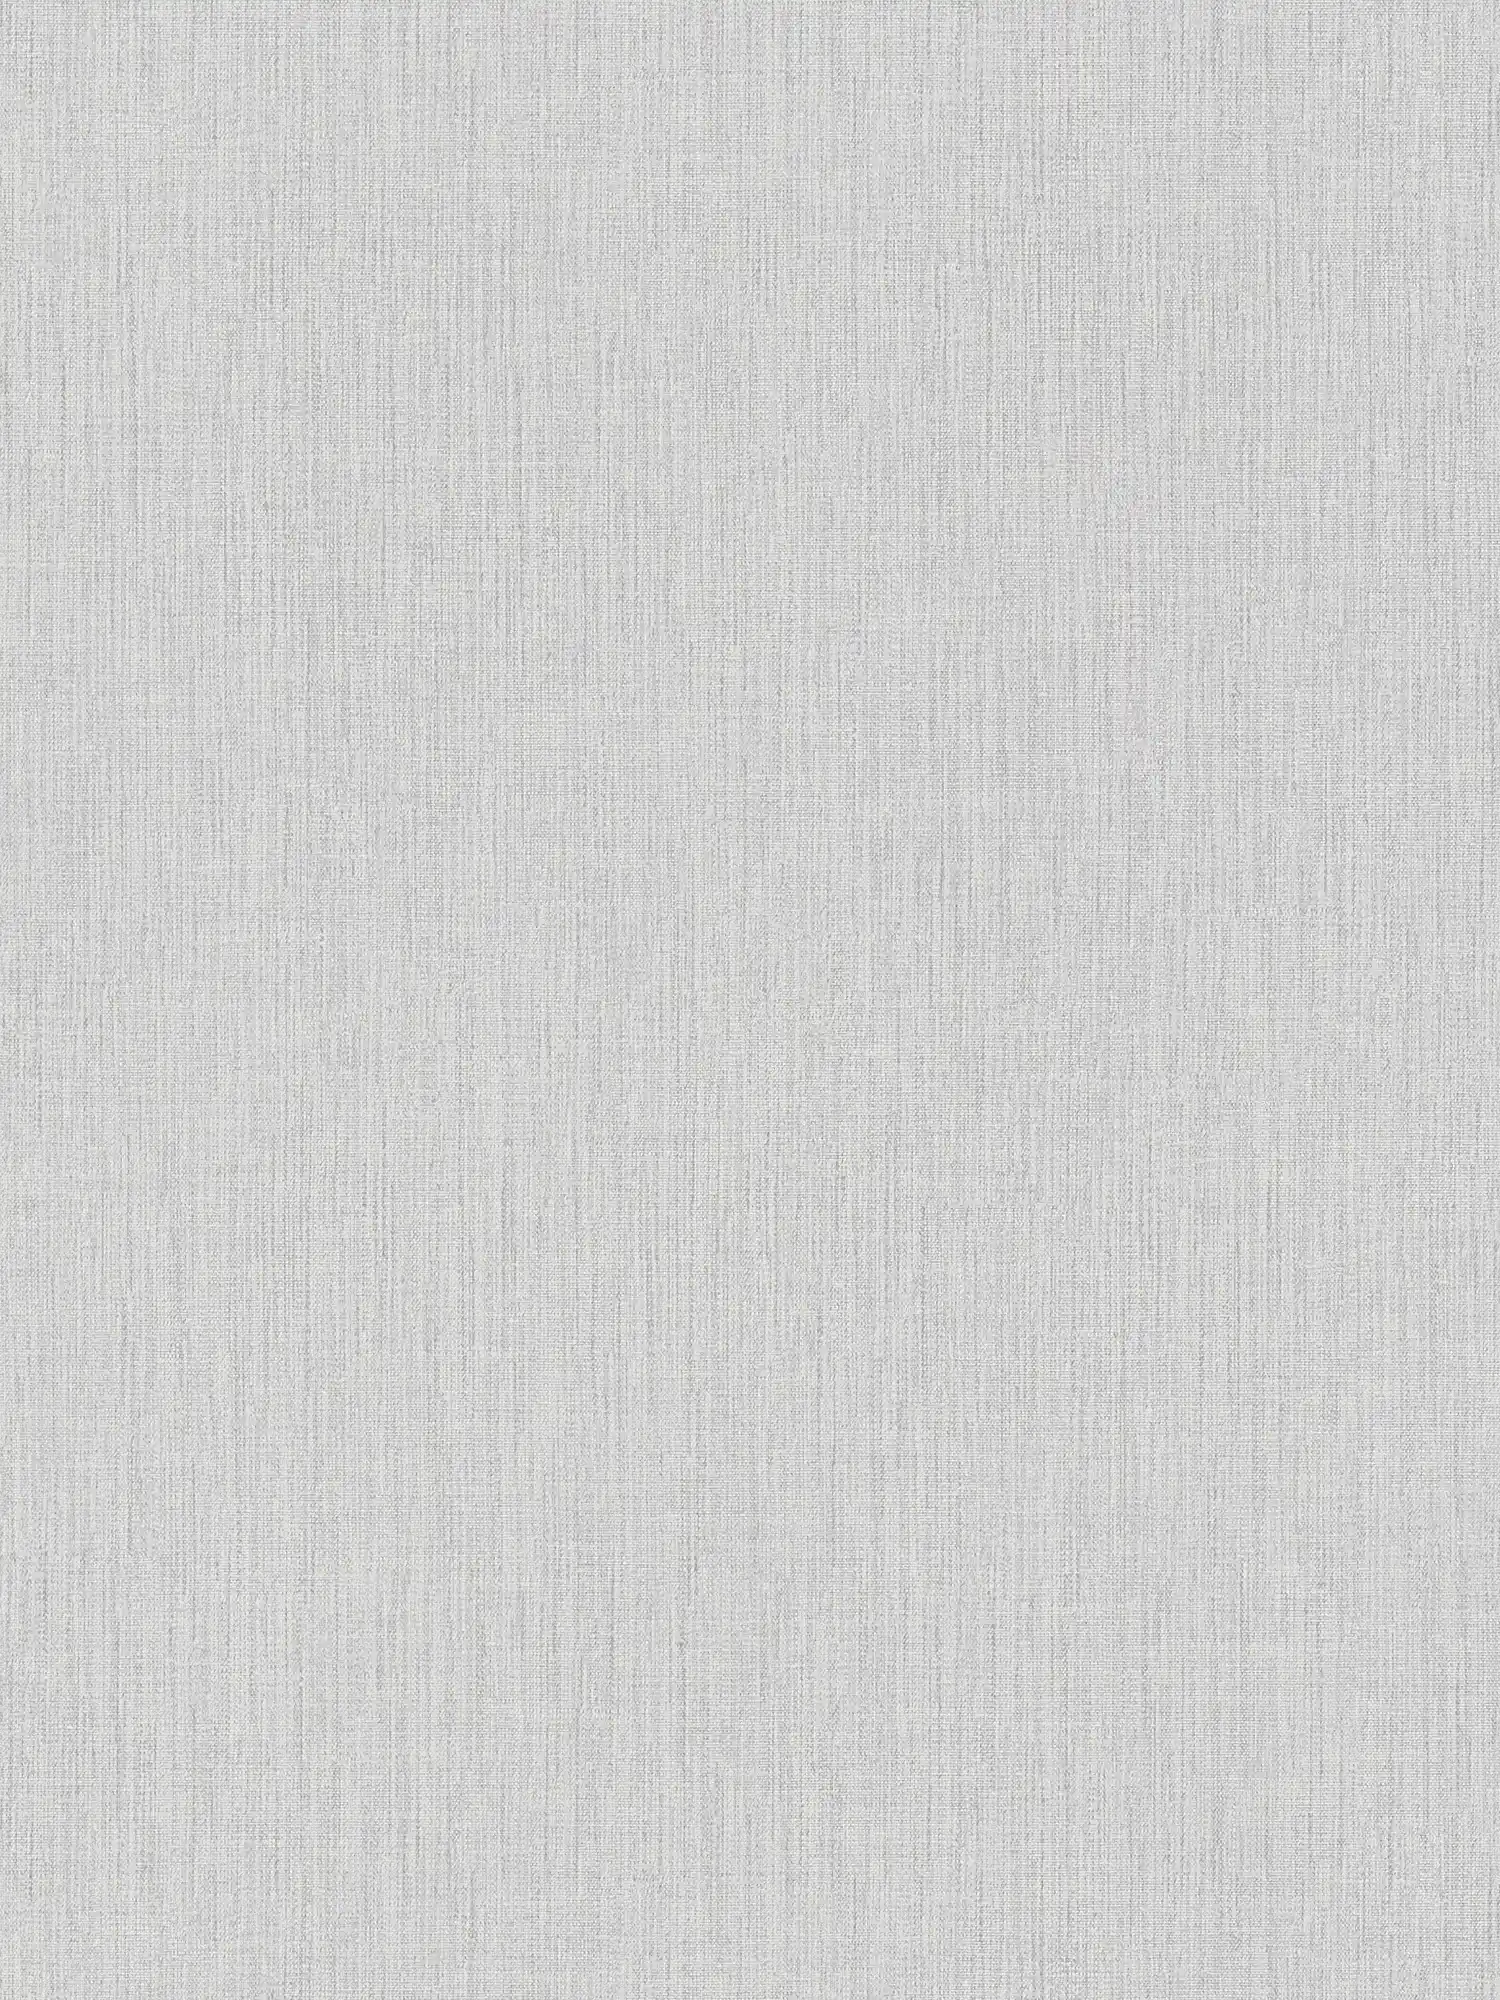 Papel pintado no tejido con aspecto de lino y estampado tono sobre tono - rosa, gris, blanco
